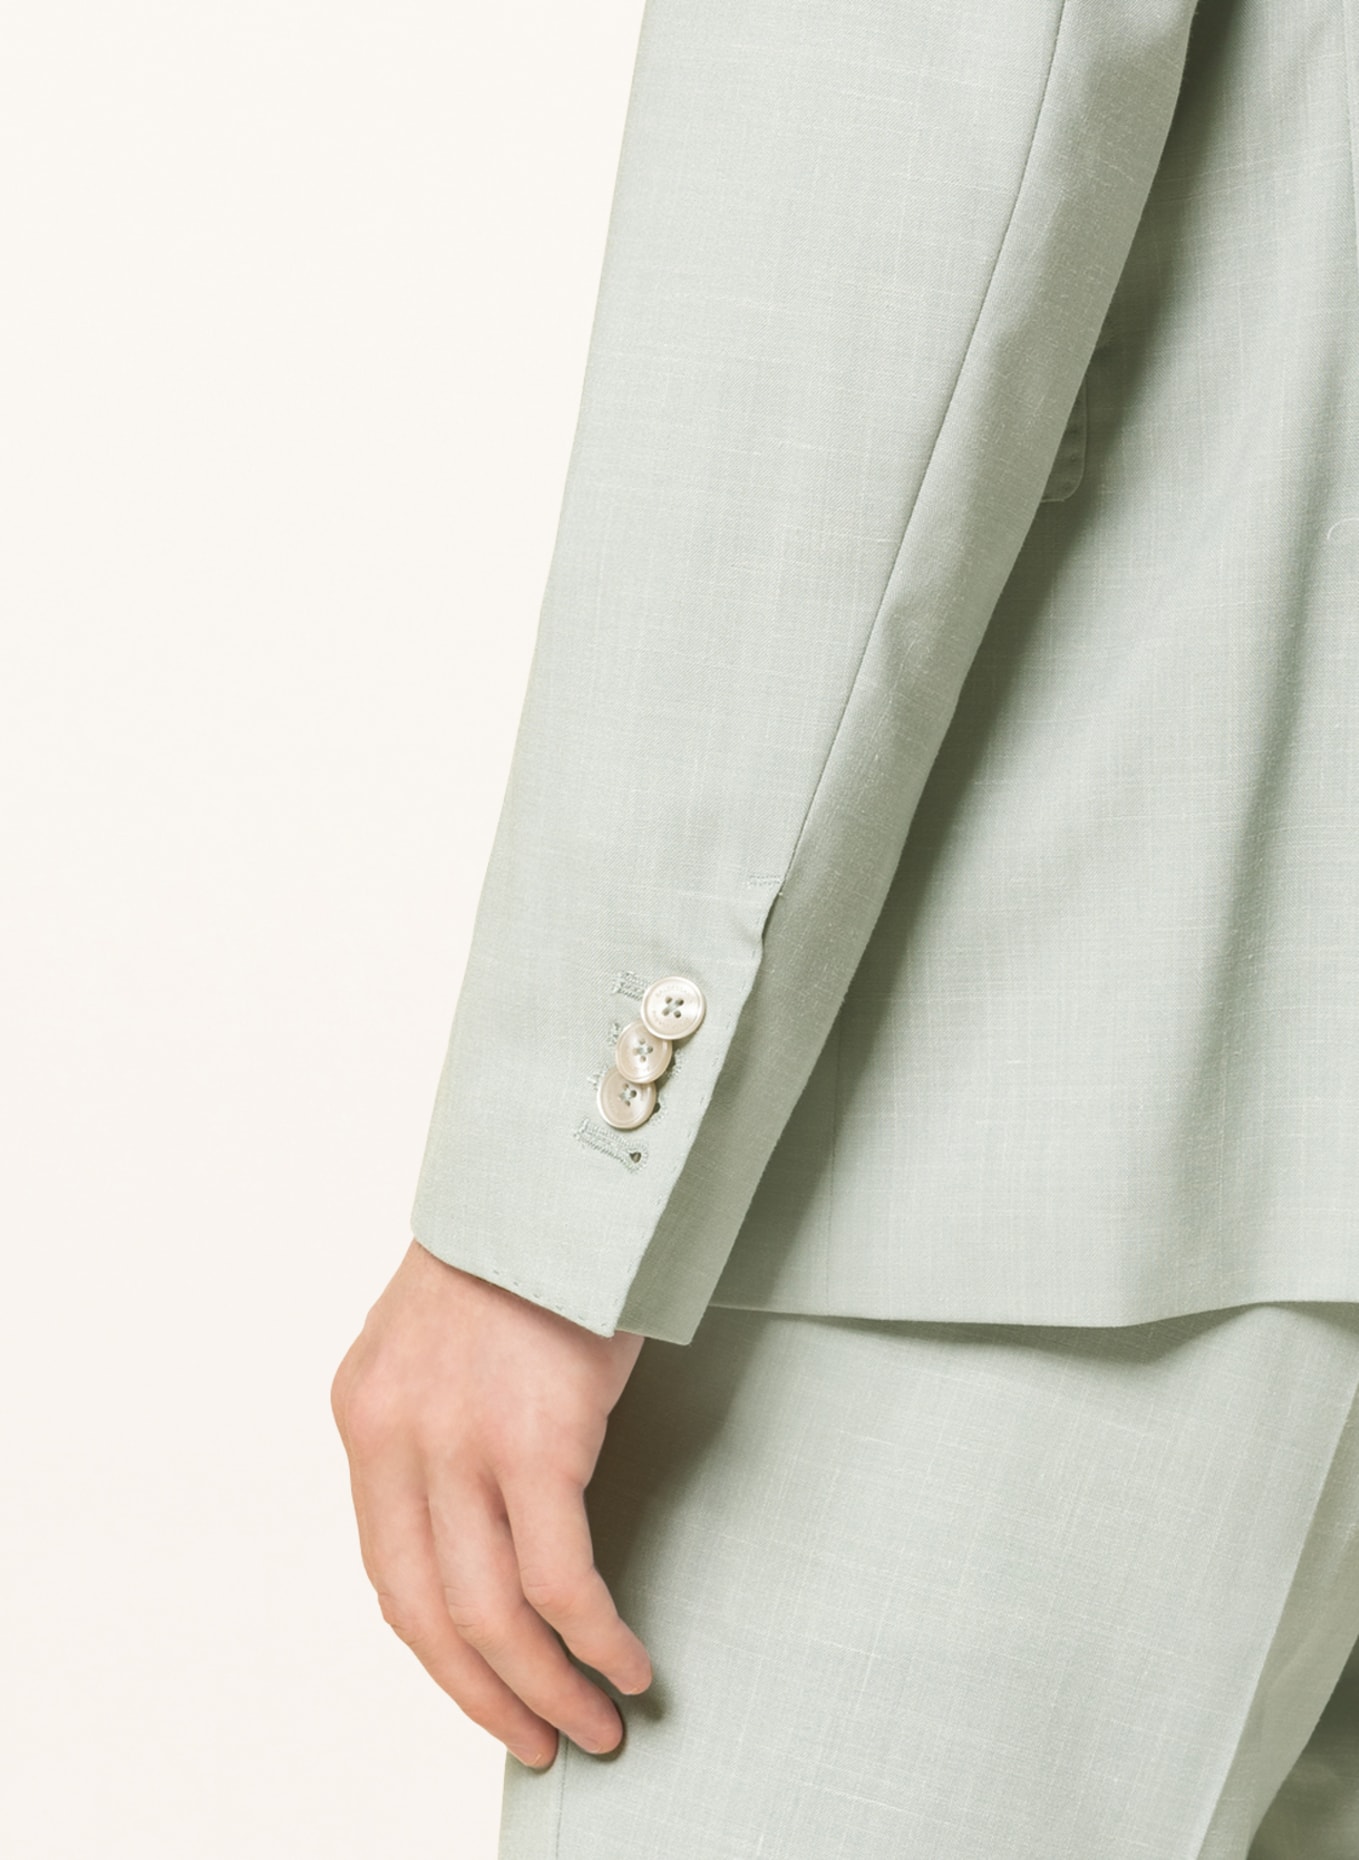 BALDESSARINI Suit jacket regular fit, Color: 5110 Green Bay (Image 5)